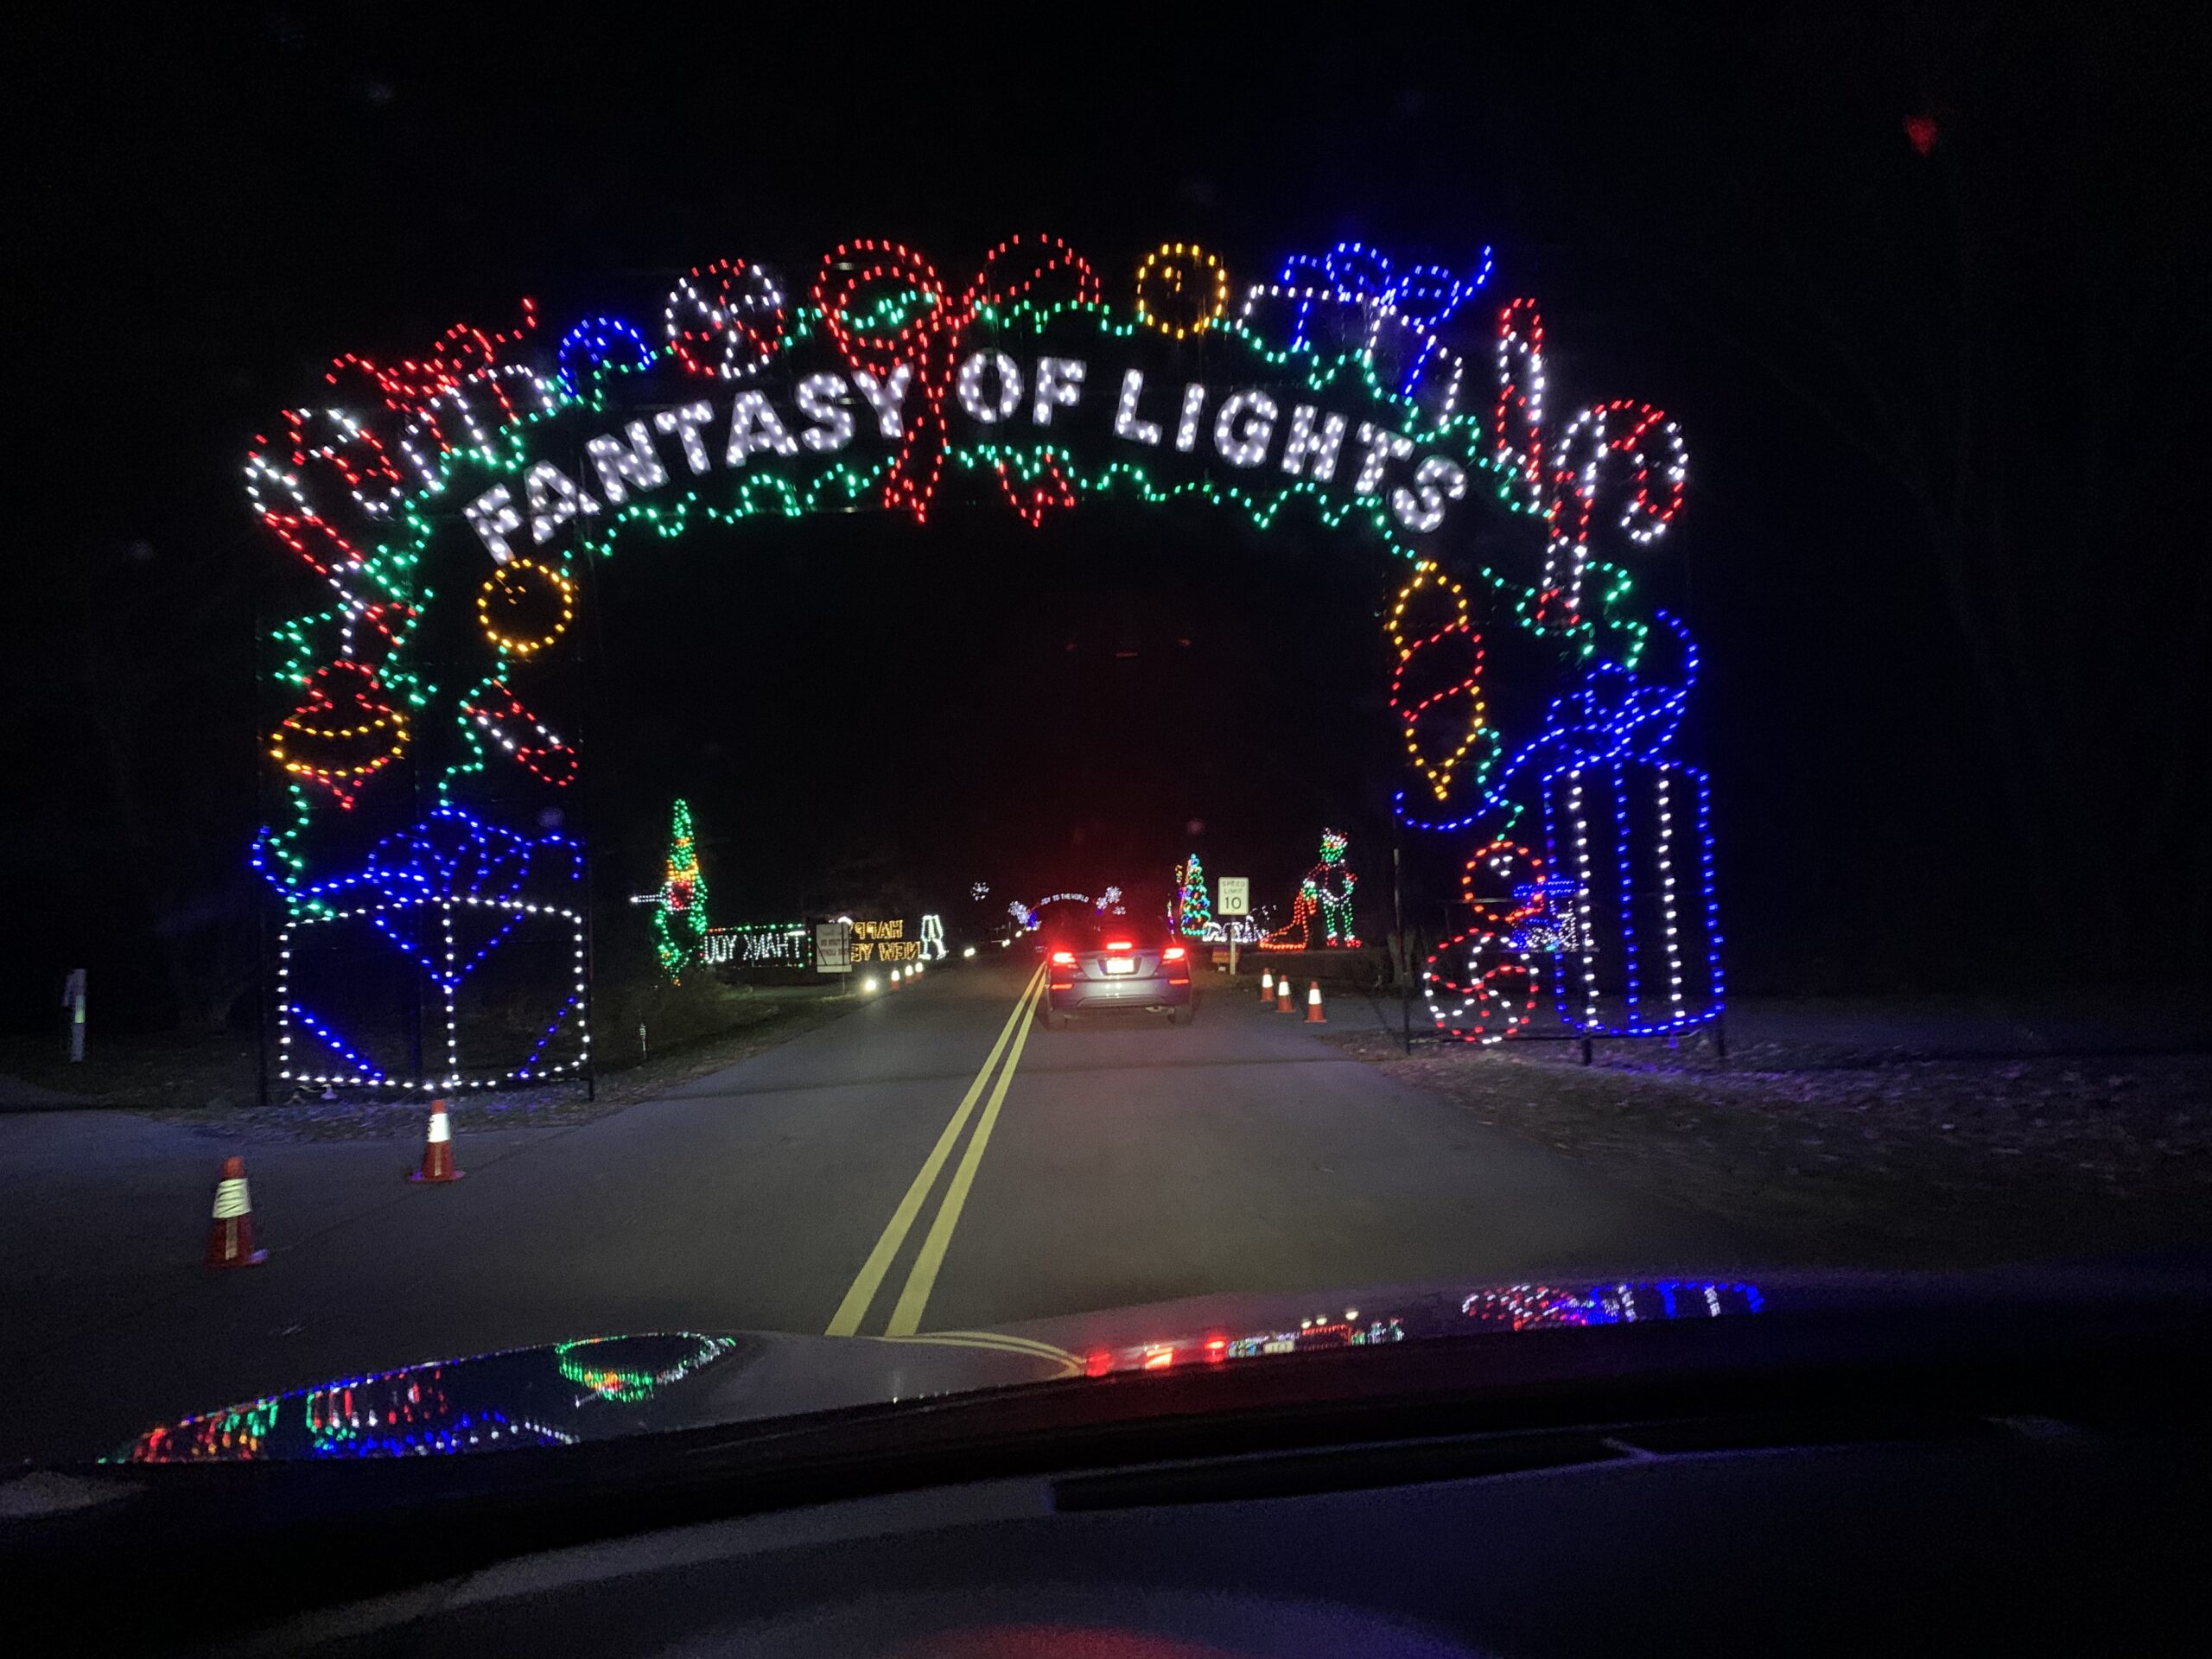 Drivethrough holiday magic at Fantasy of Lights Midlife Mama